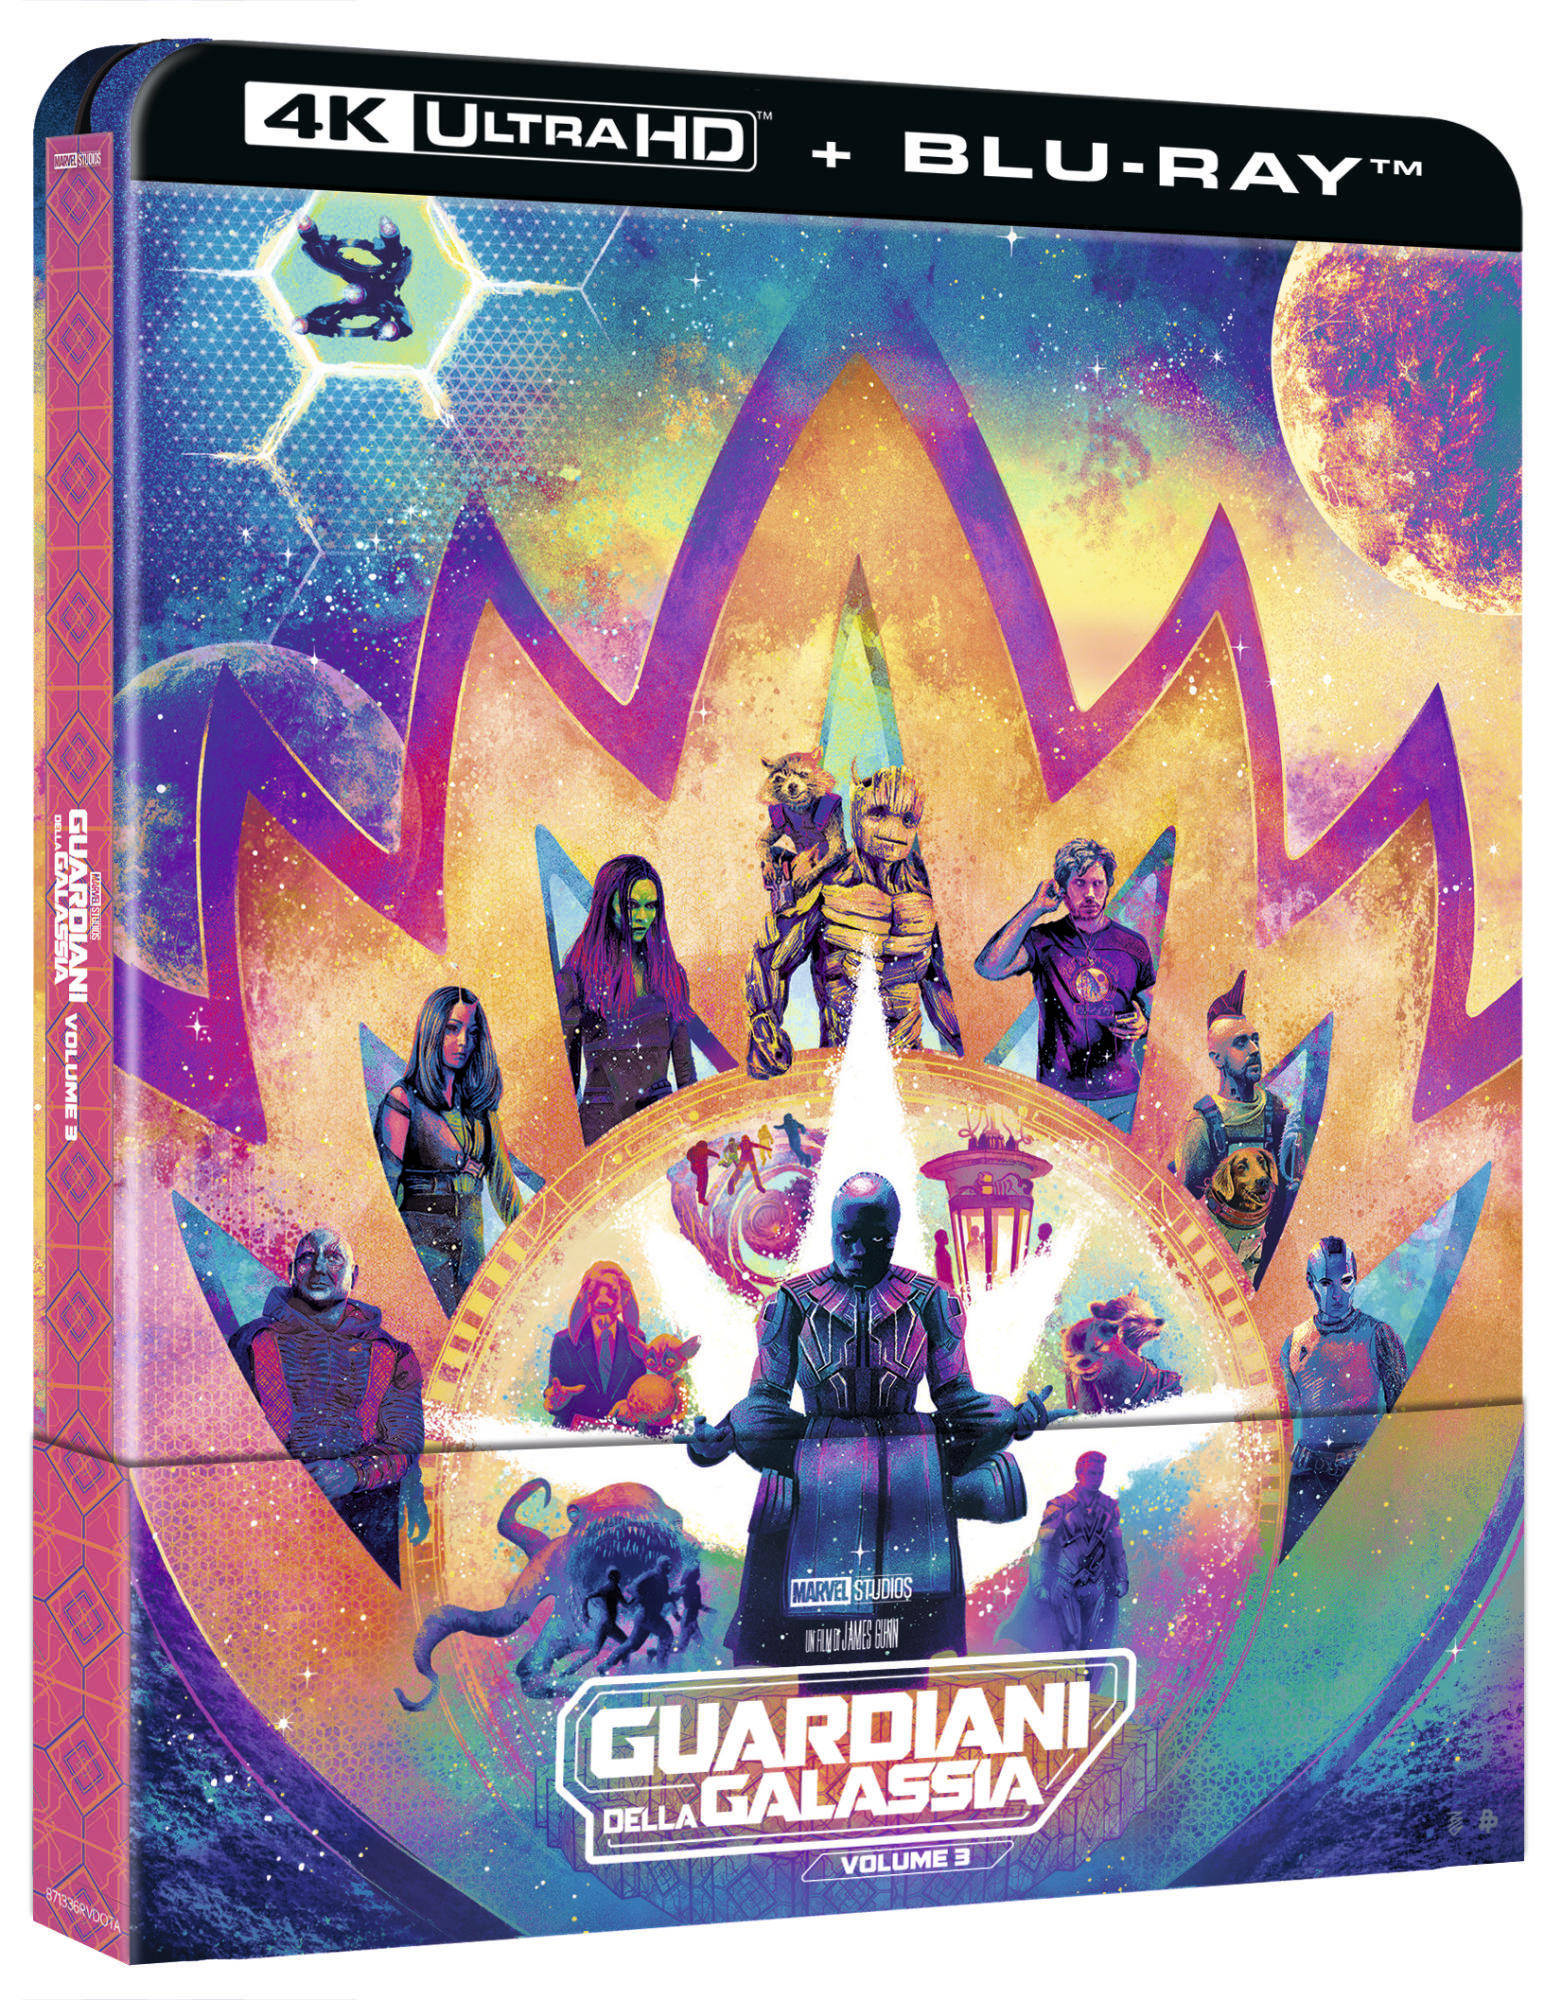 Guardiani della galassia volume 3